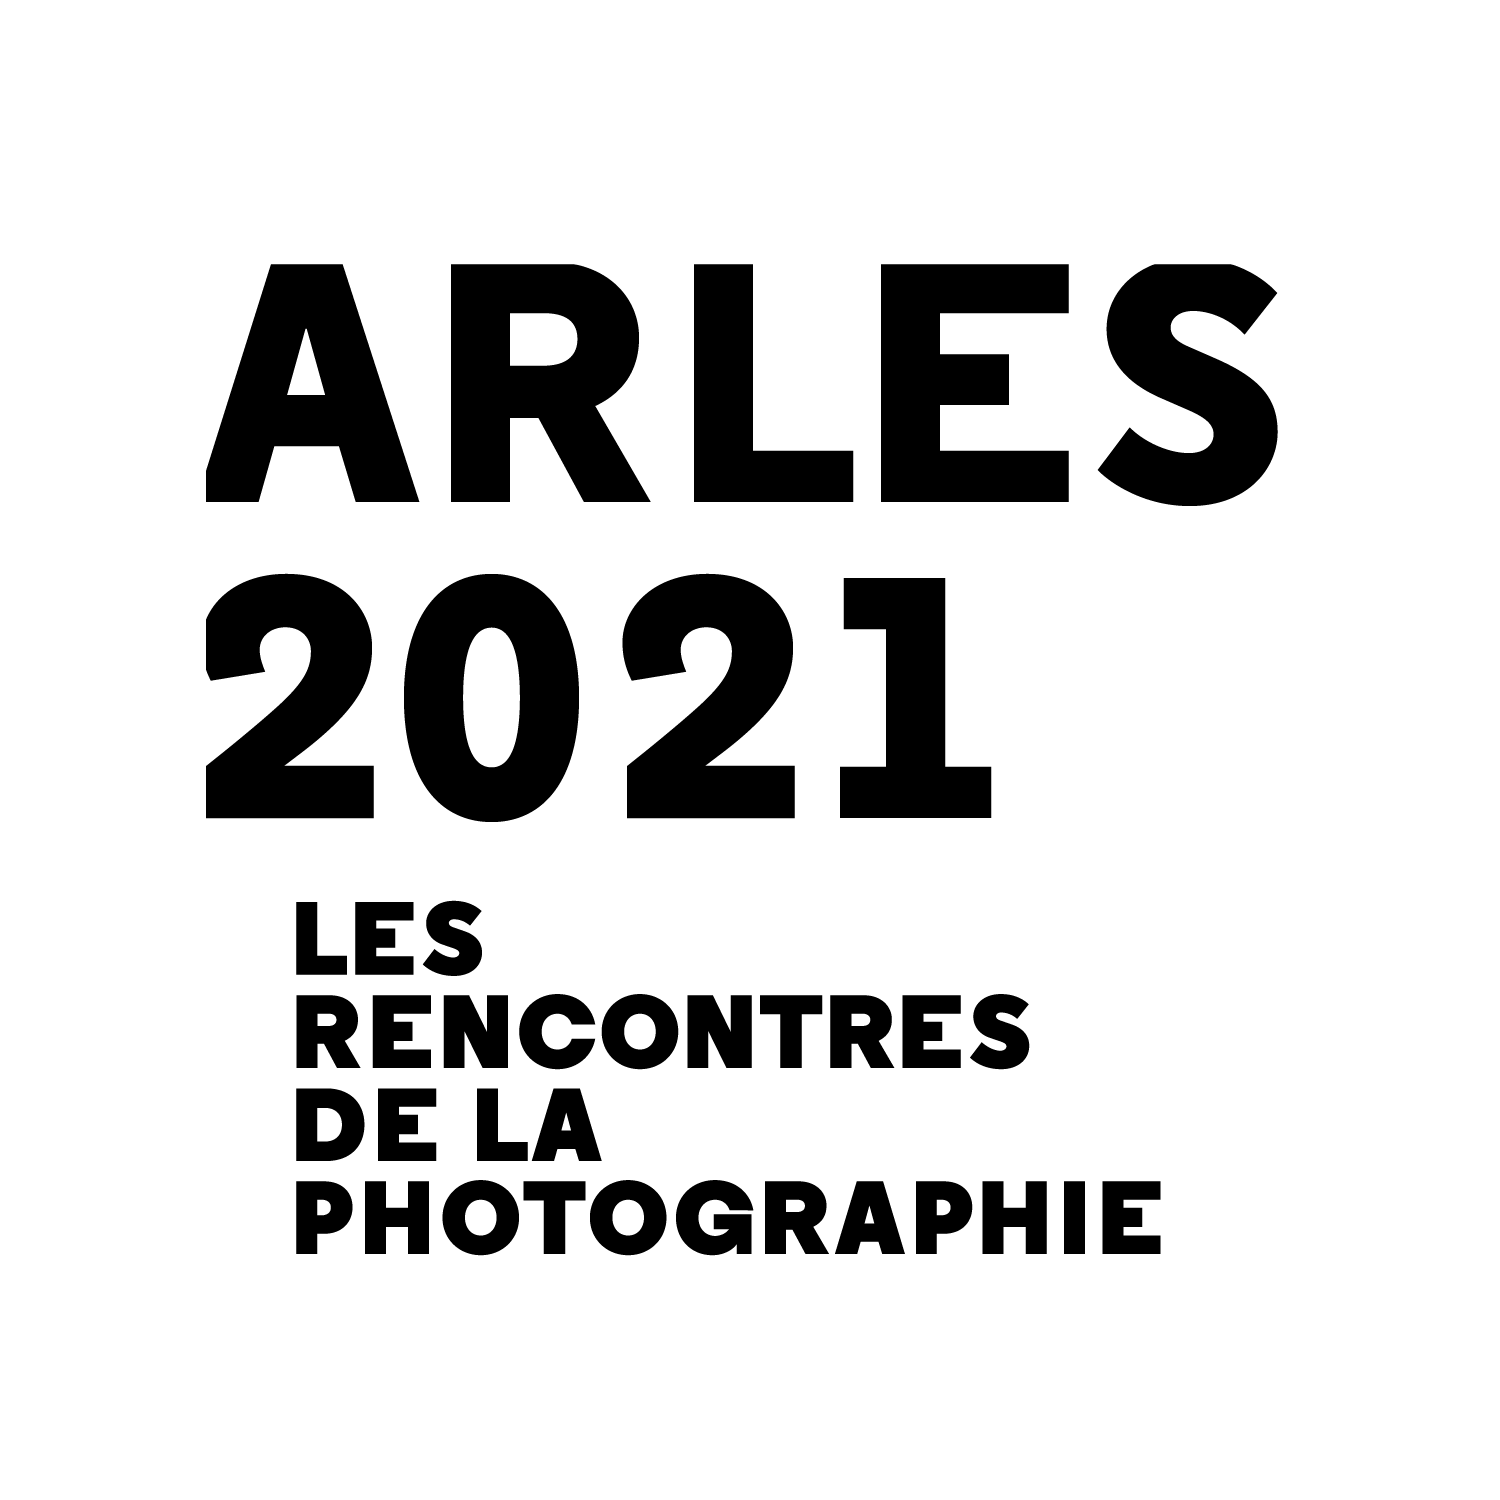 Et que brillent les Rencontres d’Arles 2021!